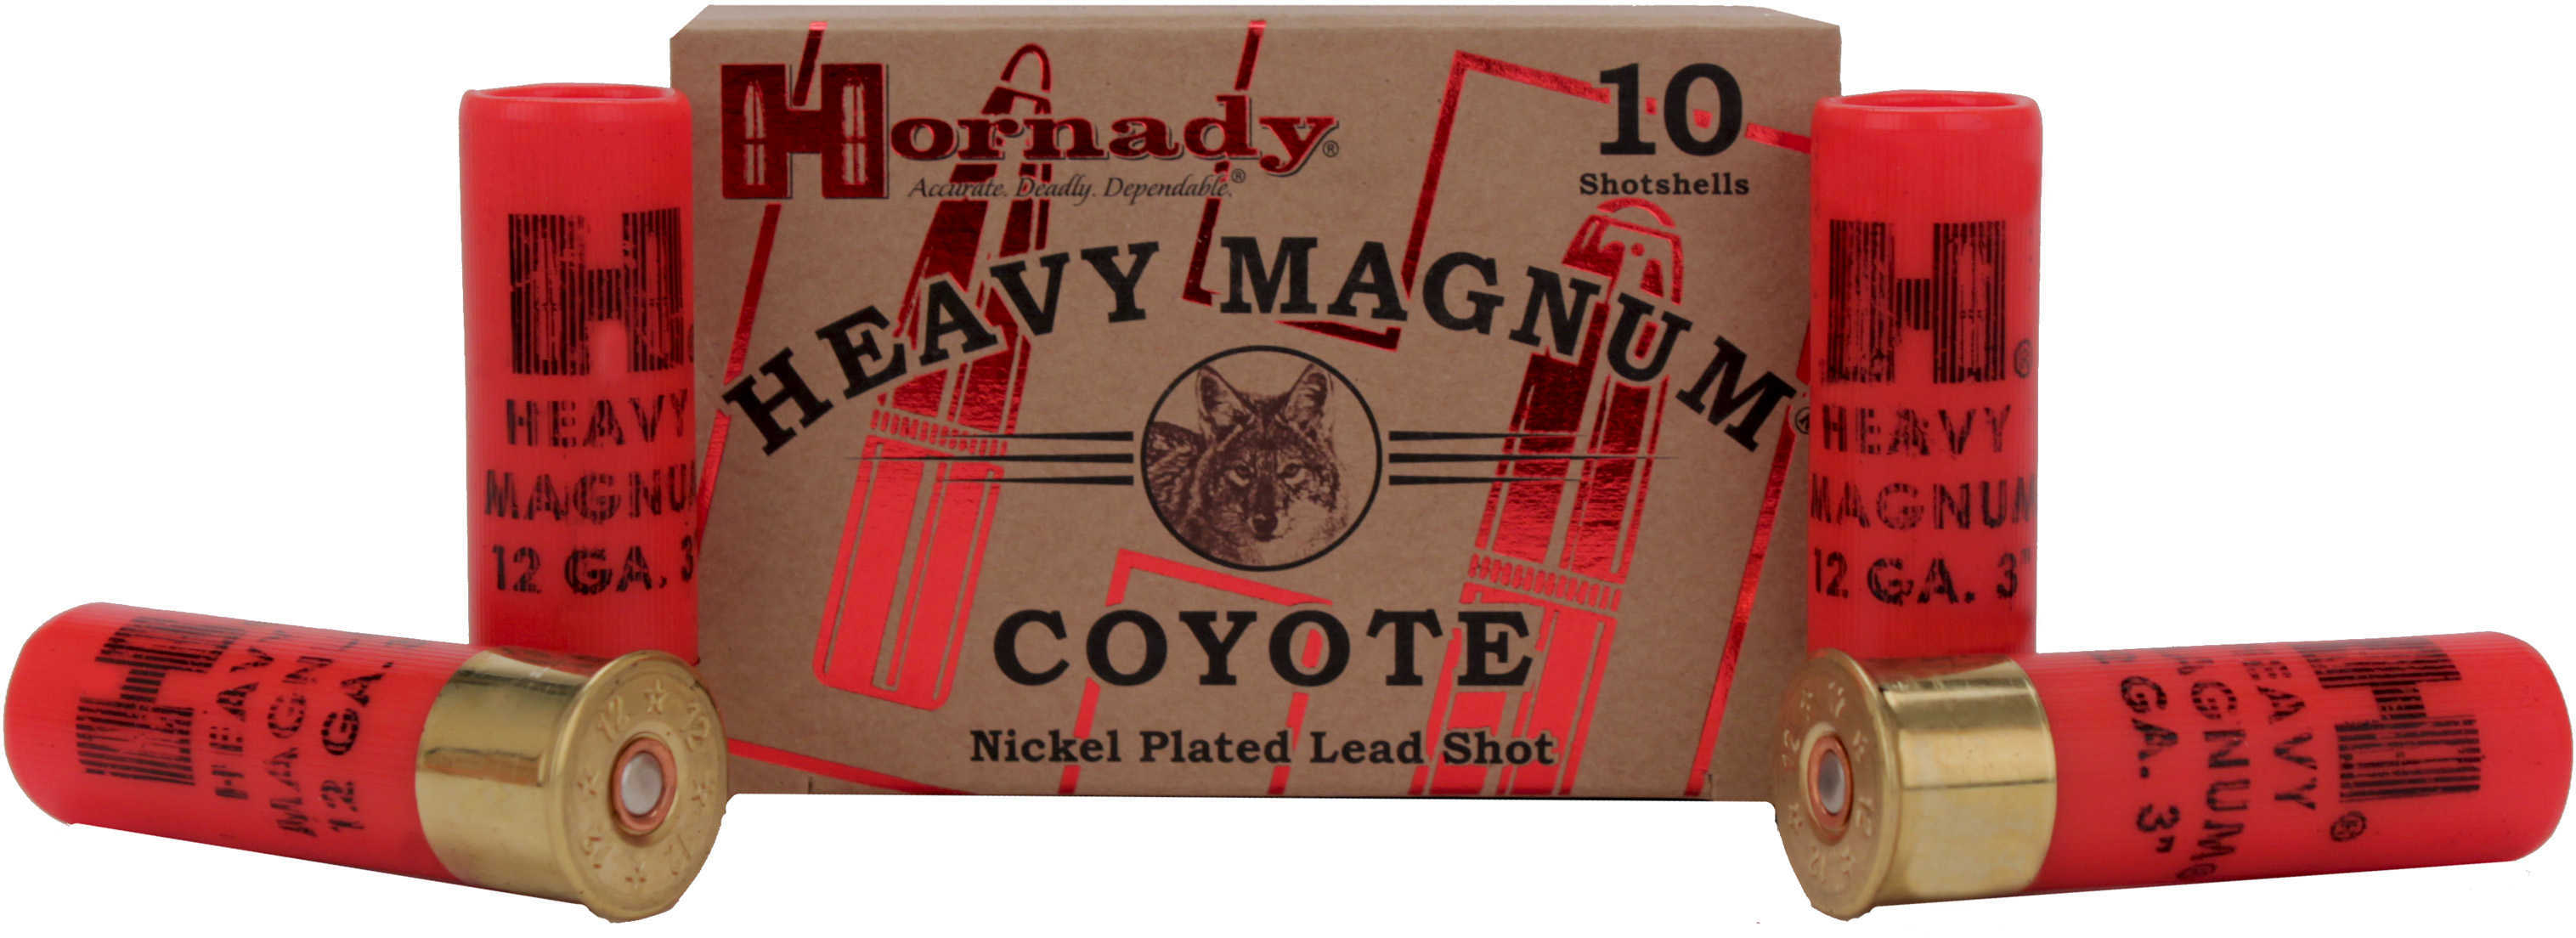 12 Gauge 3" Lead 00 Buck  1-1/2 oz 10 Rounds Hornady Shotgun Ammunition